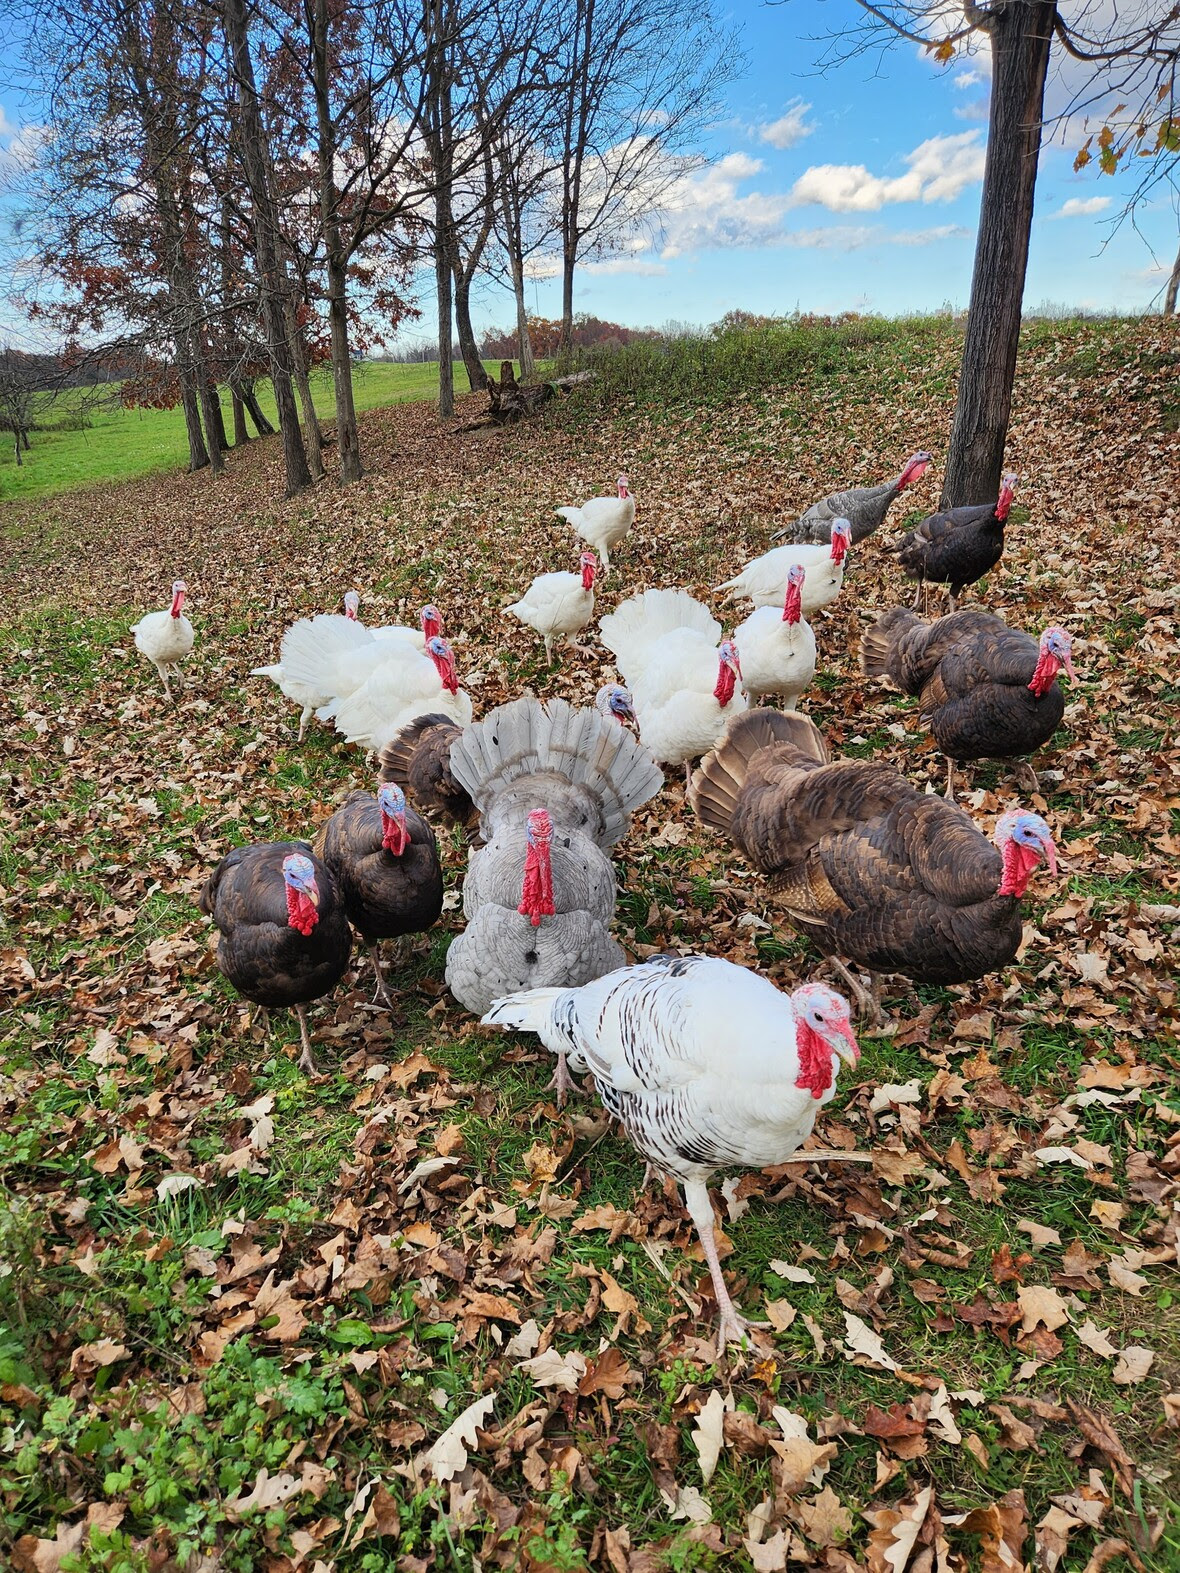 Turkeys in the field